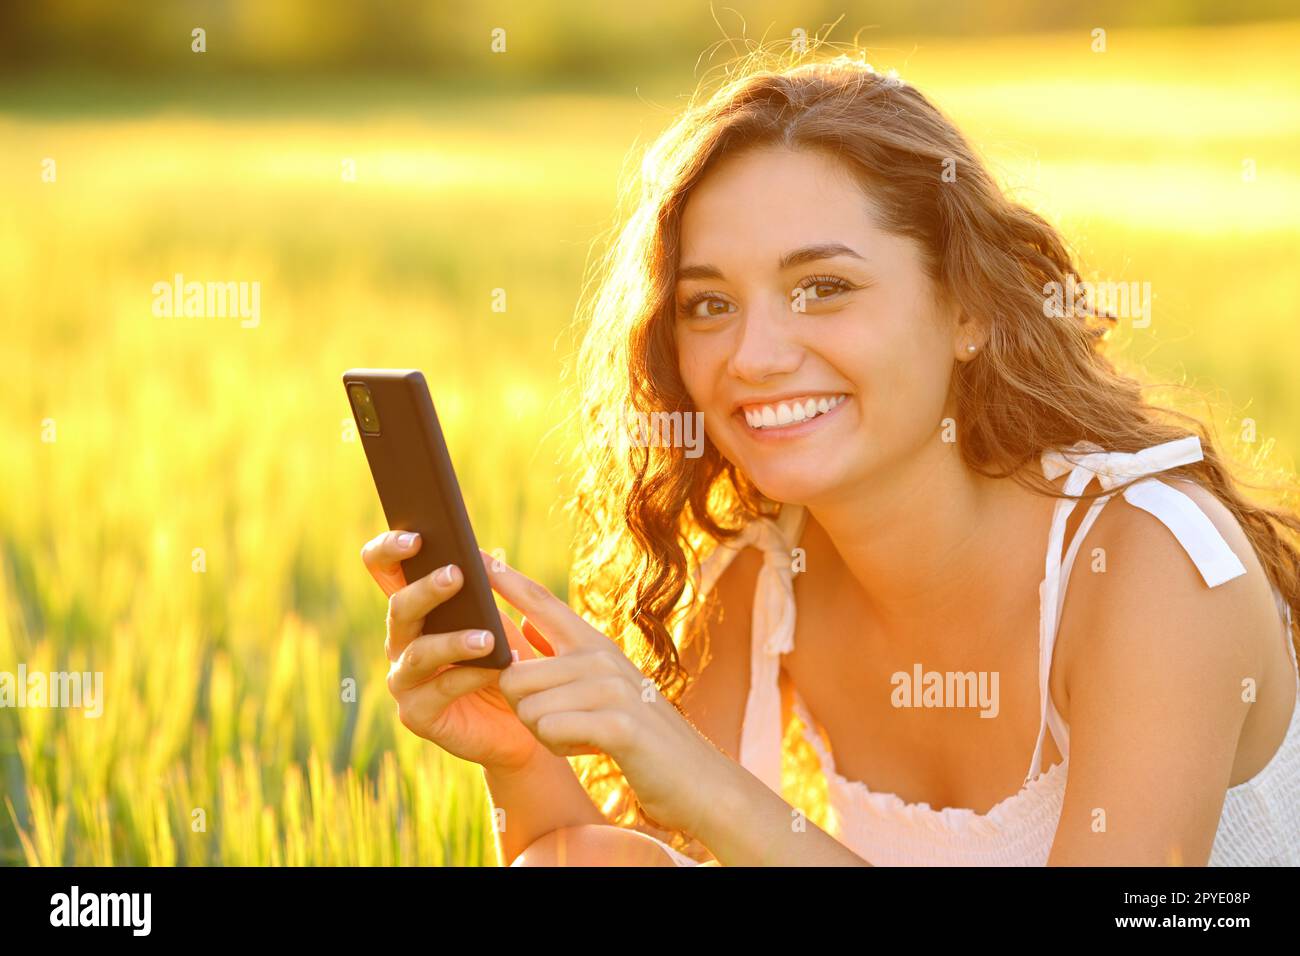 Femme heureuse posant dans un champ tenant le téléphone Banque D'Images